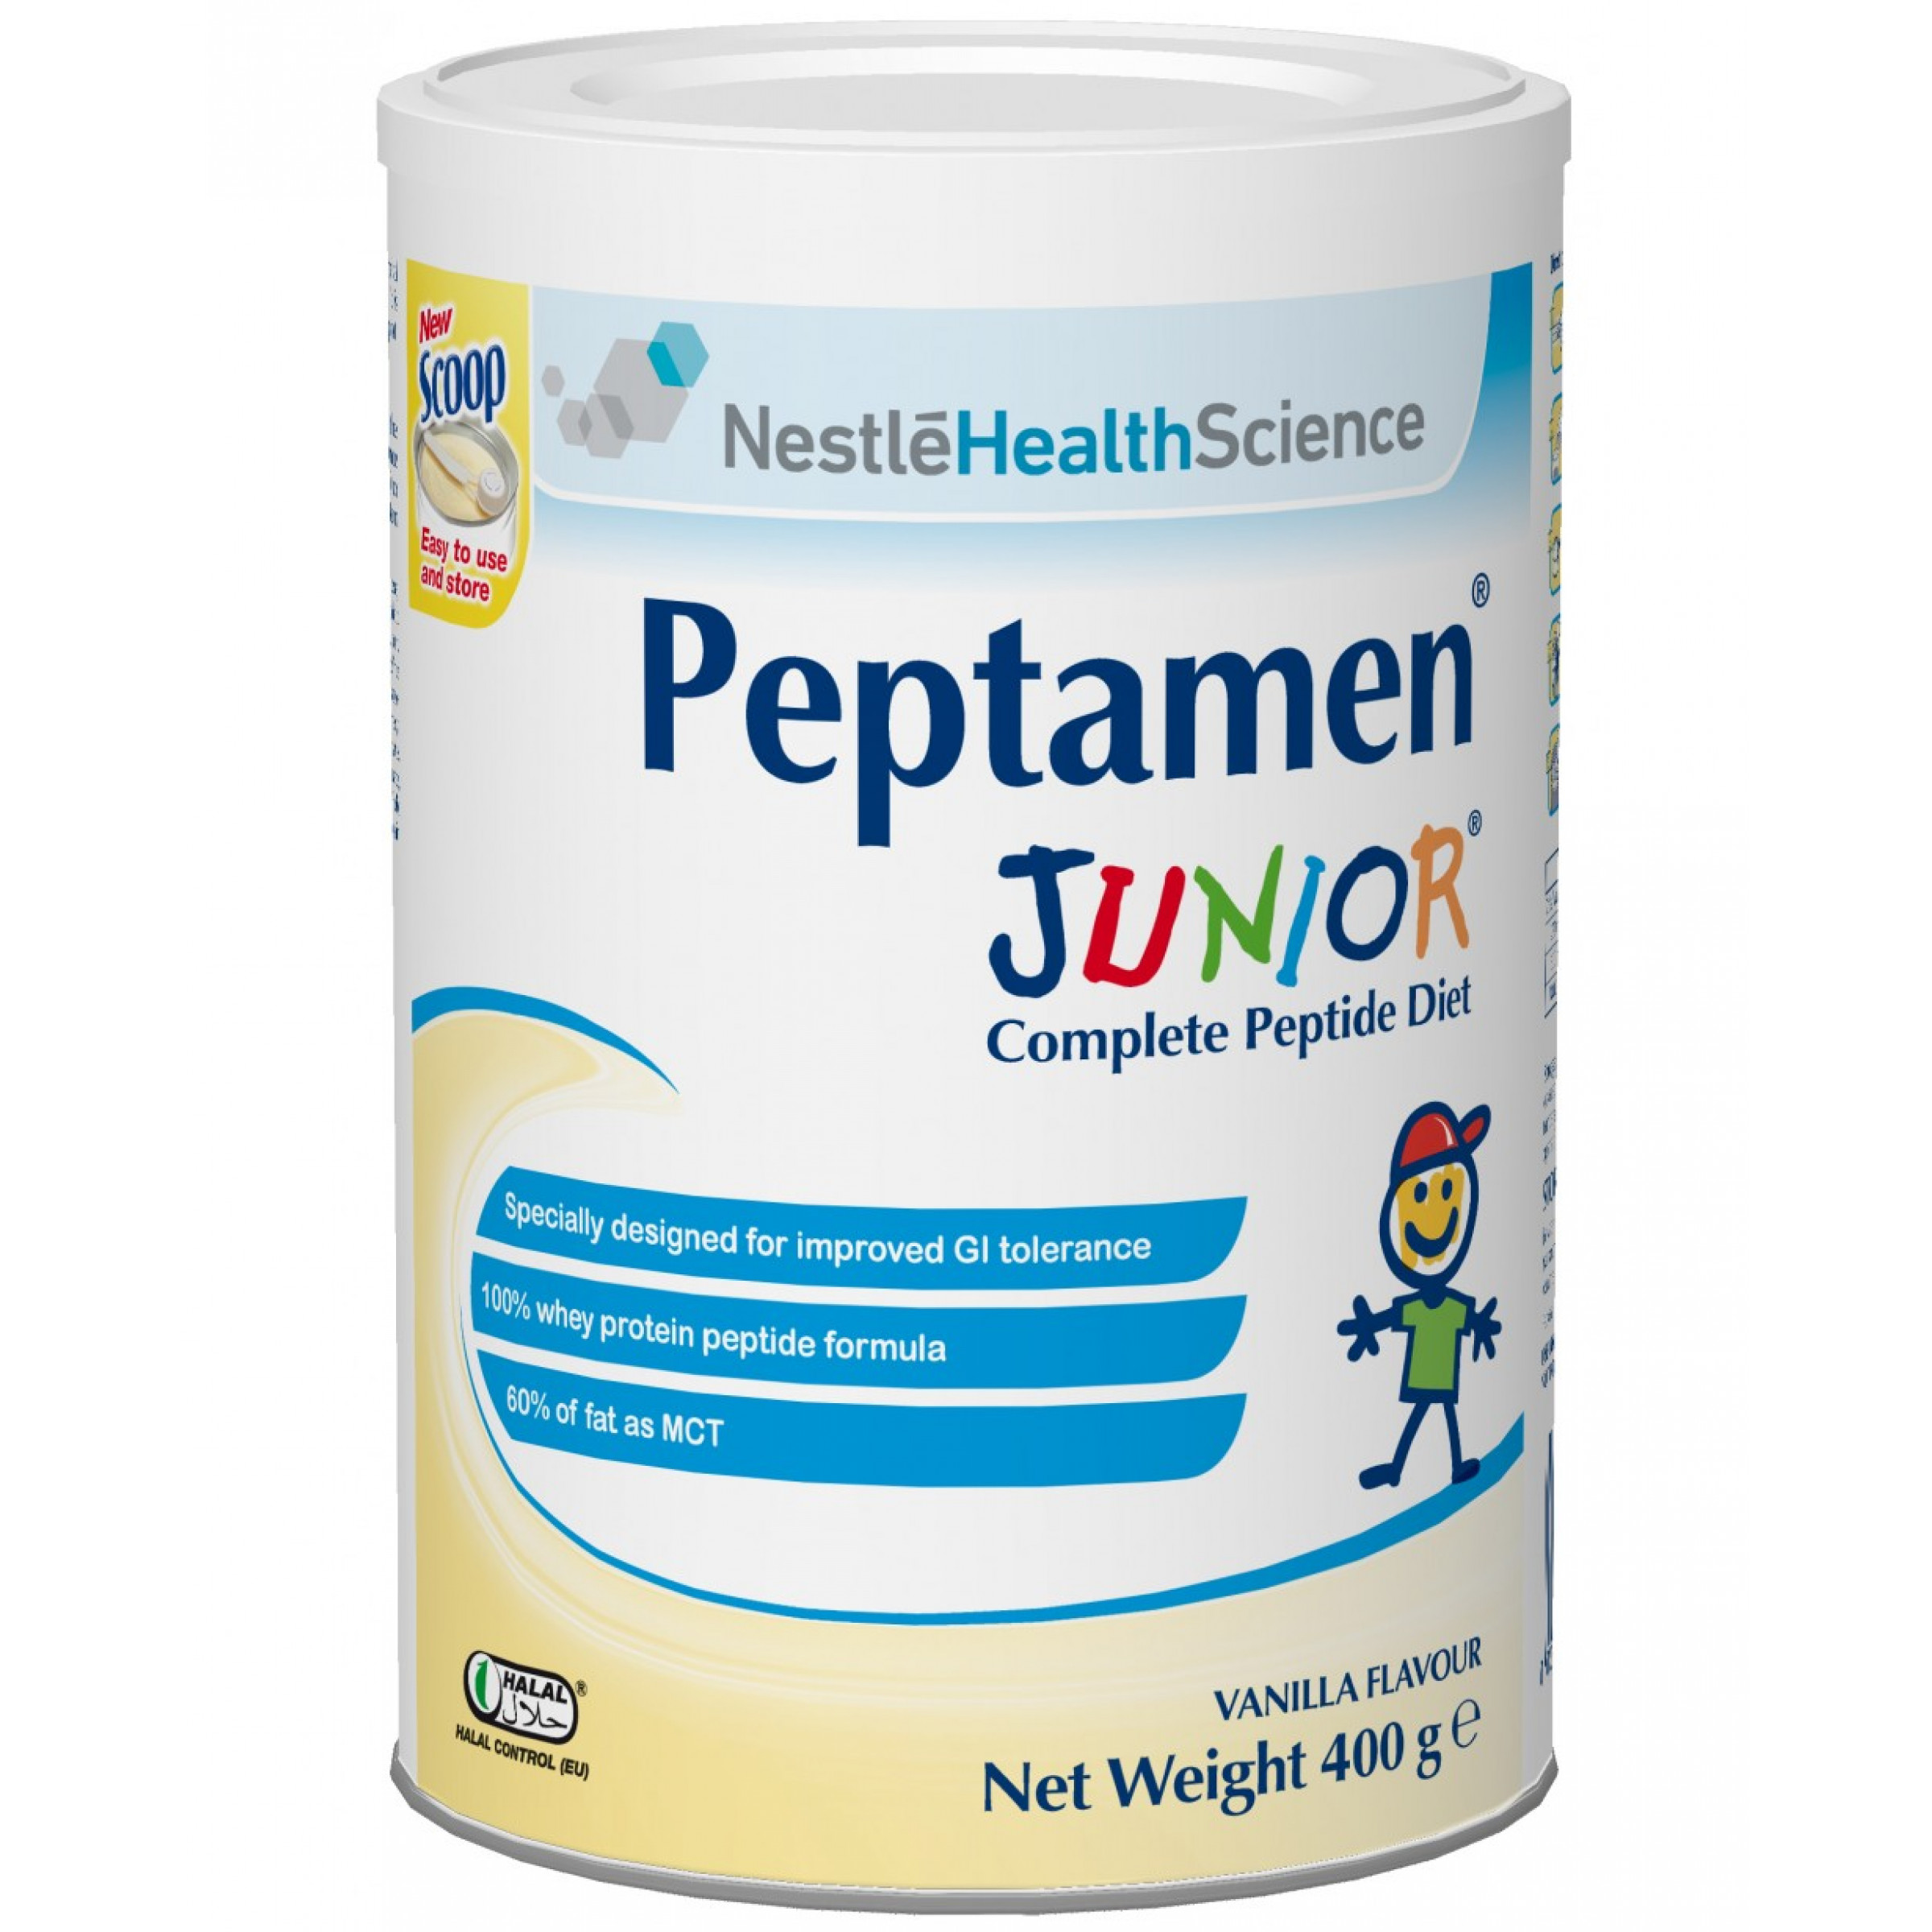 Сухая смесь PEPTAMEN Junior ACE002-1 (Пептамен Юниор) сбалансированная смесь для зондового и перорального питания для детей от 1 года до 10 лет, 400 гр